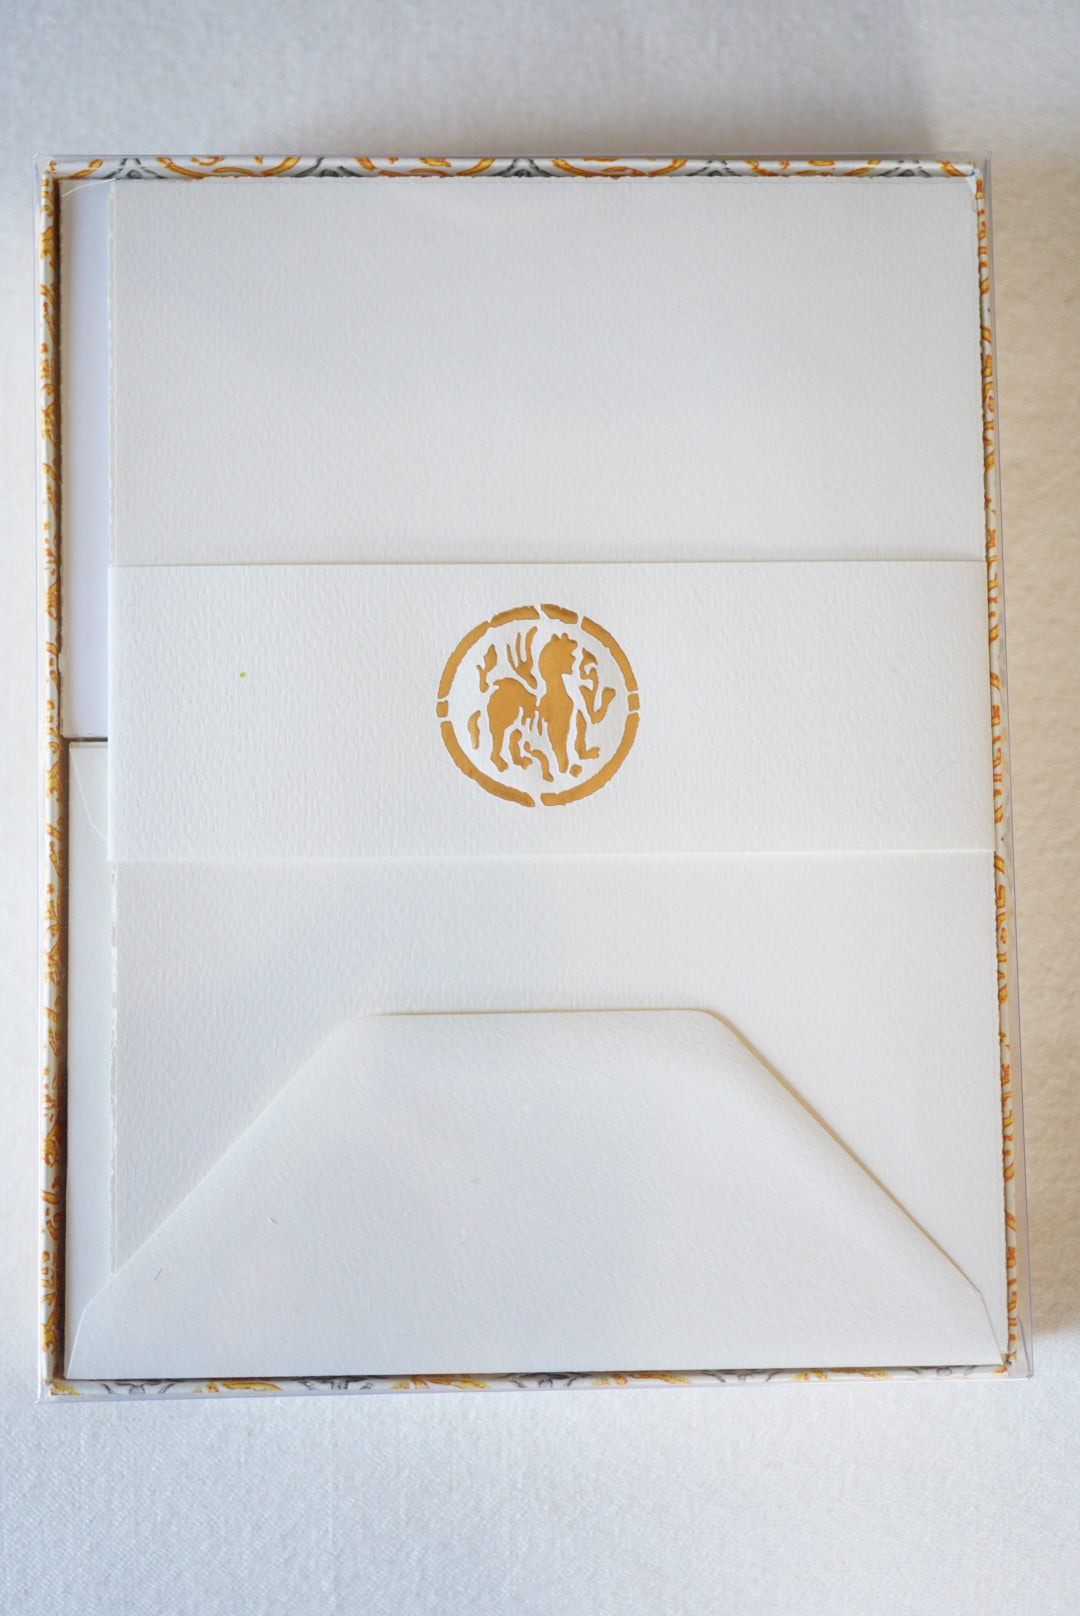 Rossi Medioevalis Deckle Edge Letter Set (Cream)